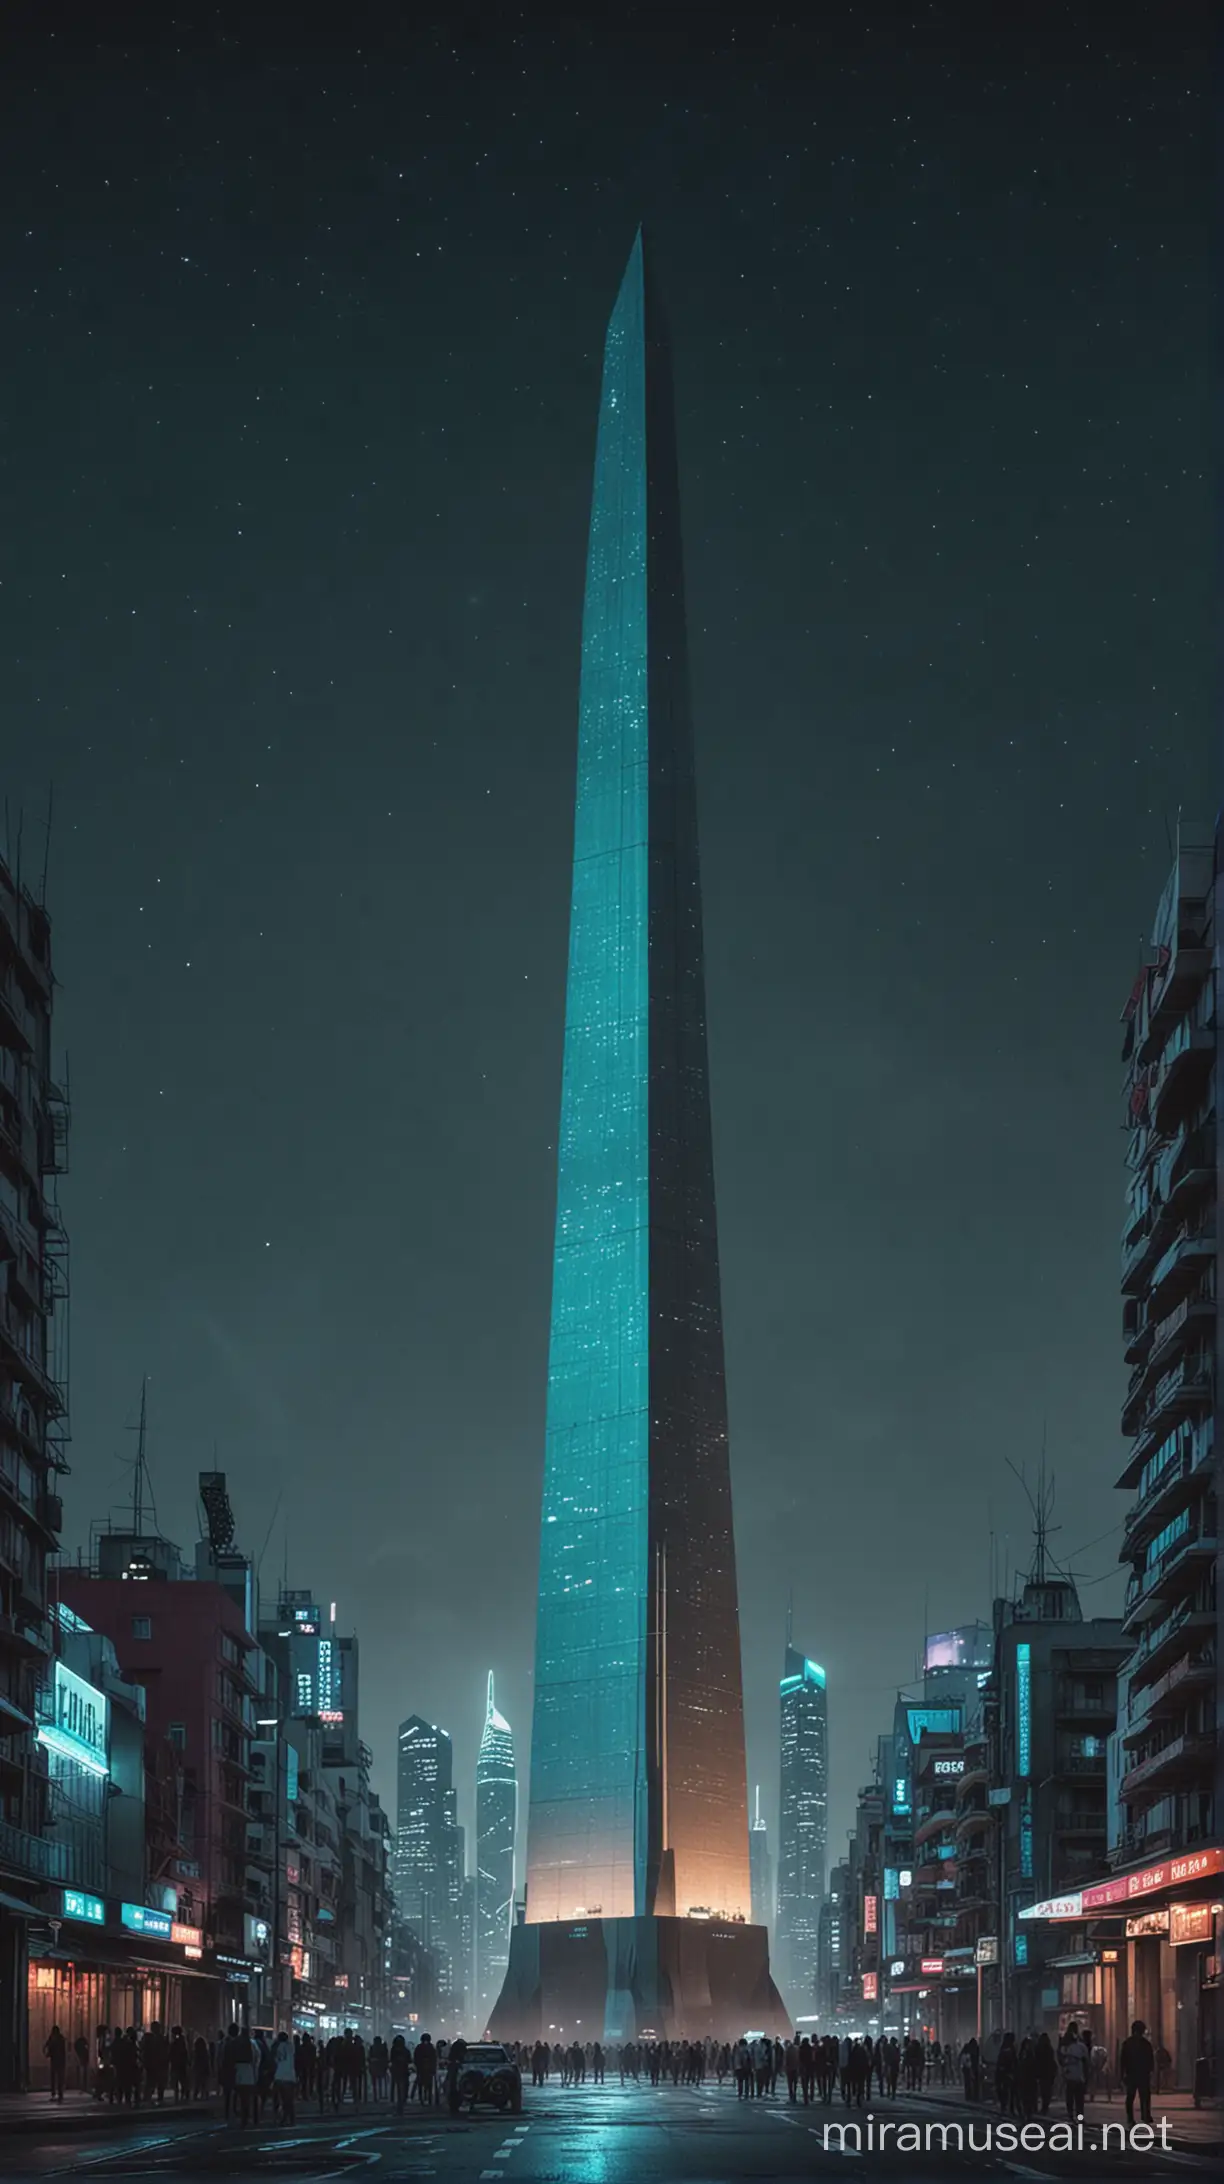 hiperrealista cinematografico obelisco de Buenos Aires centrado en la parte de abajo de la mitad de pàgina, de noche en una ciudad ciberpunk con un cielo galactico